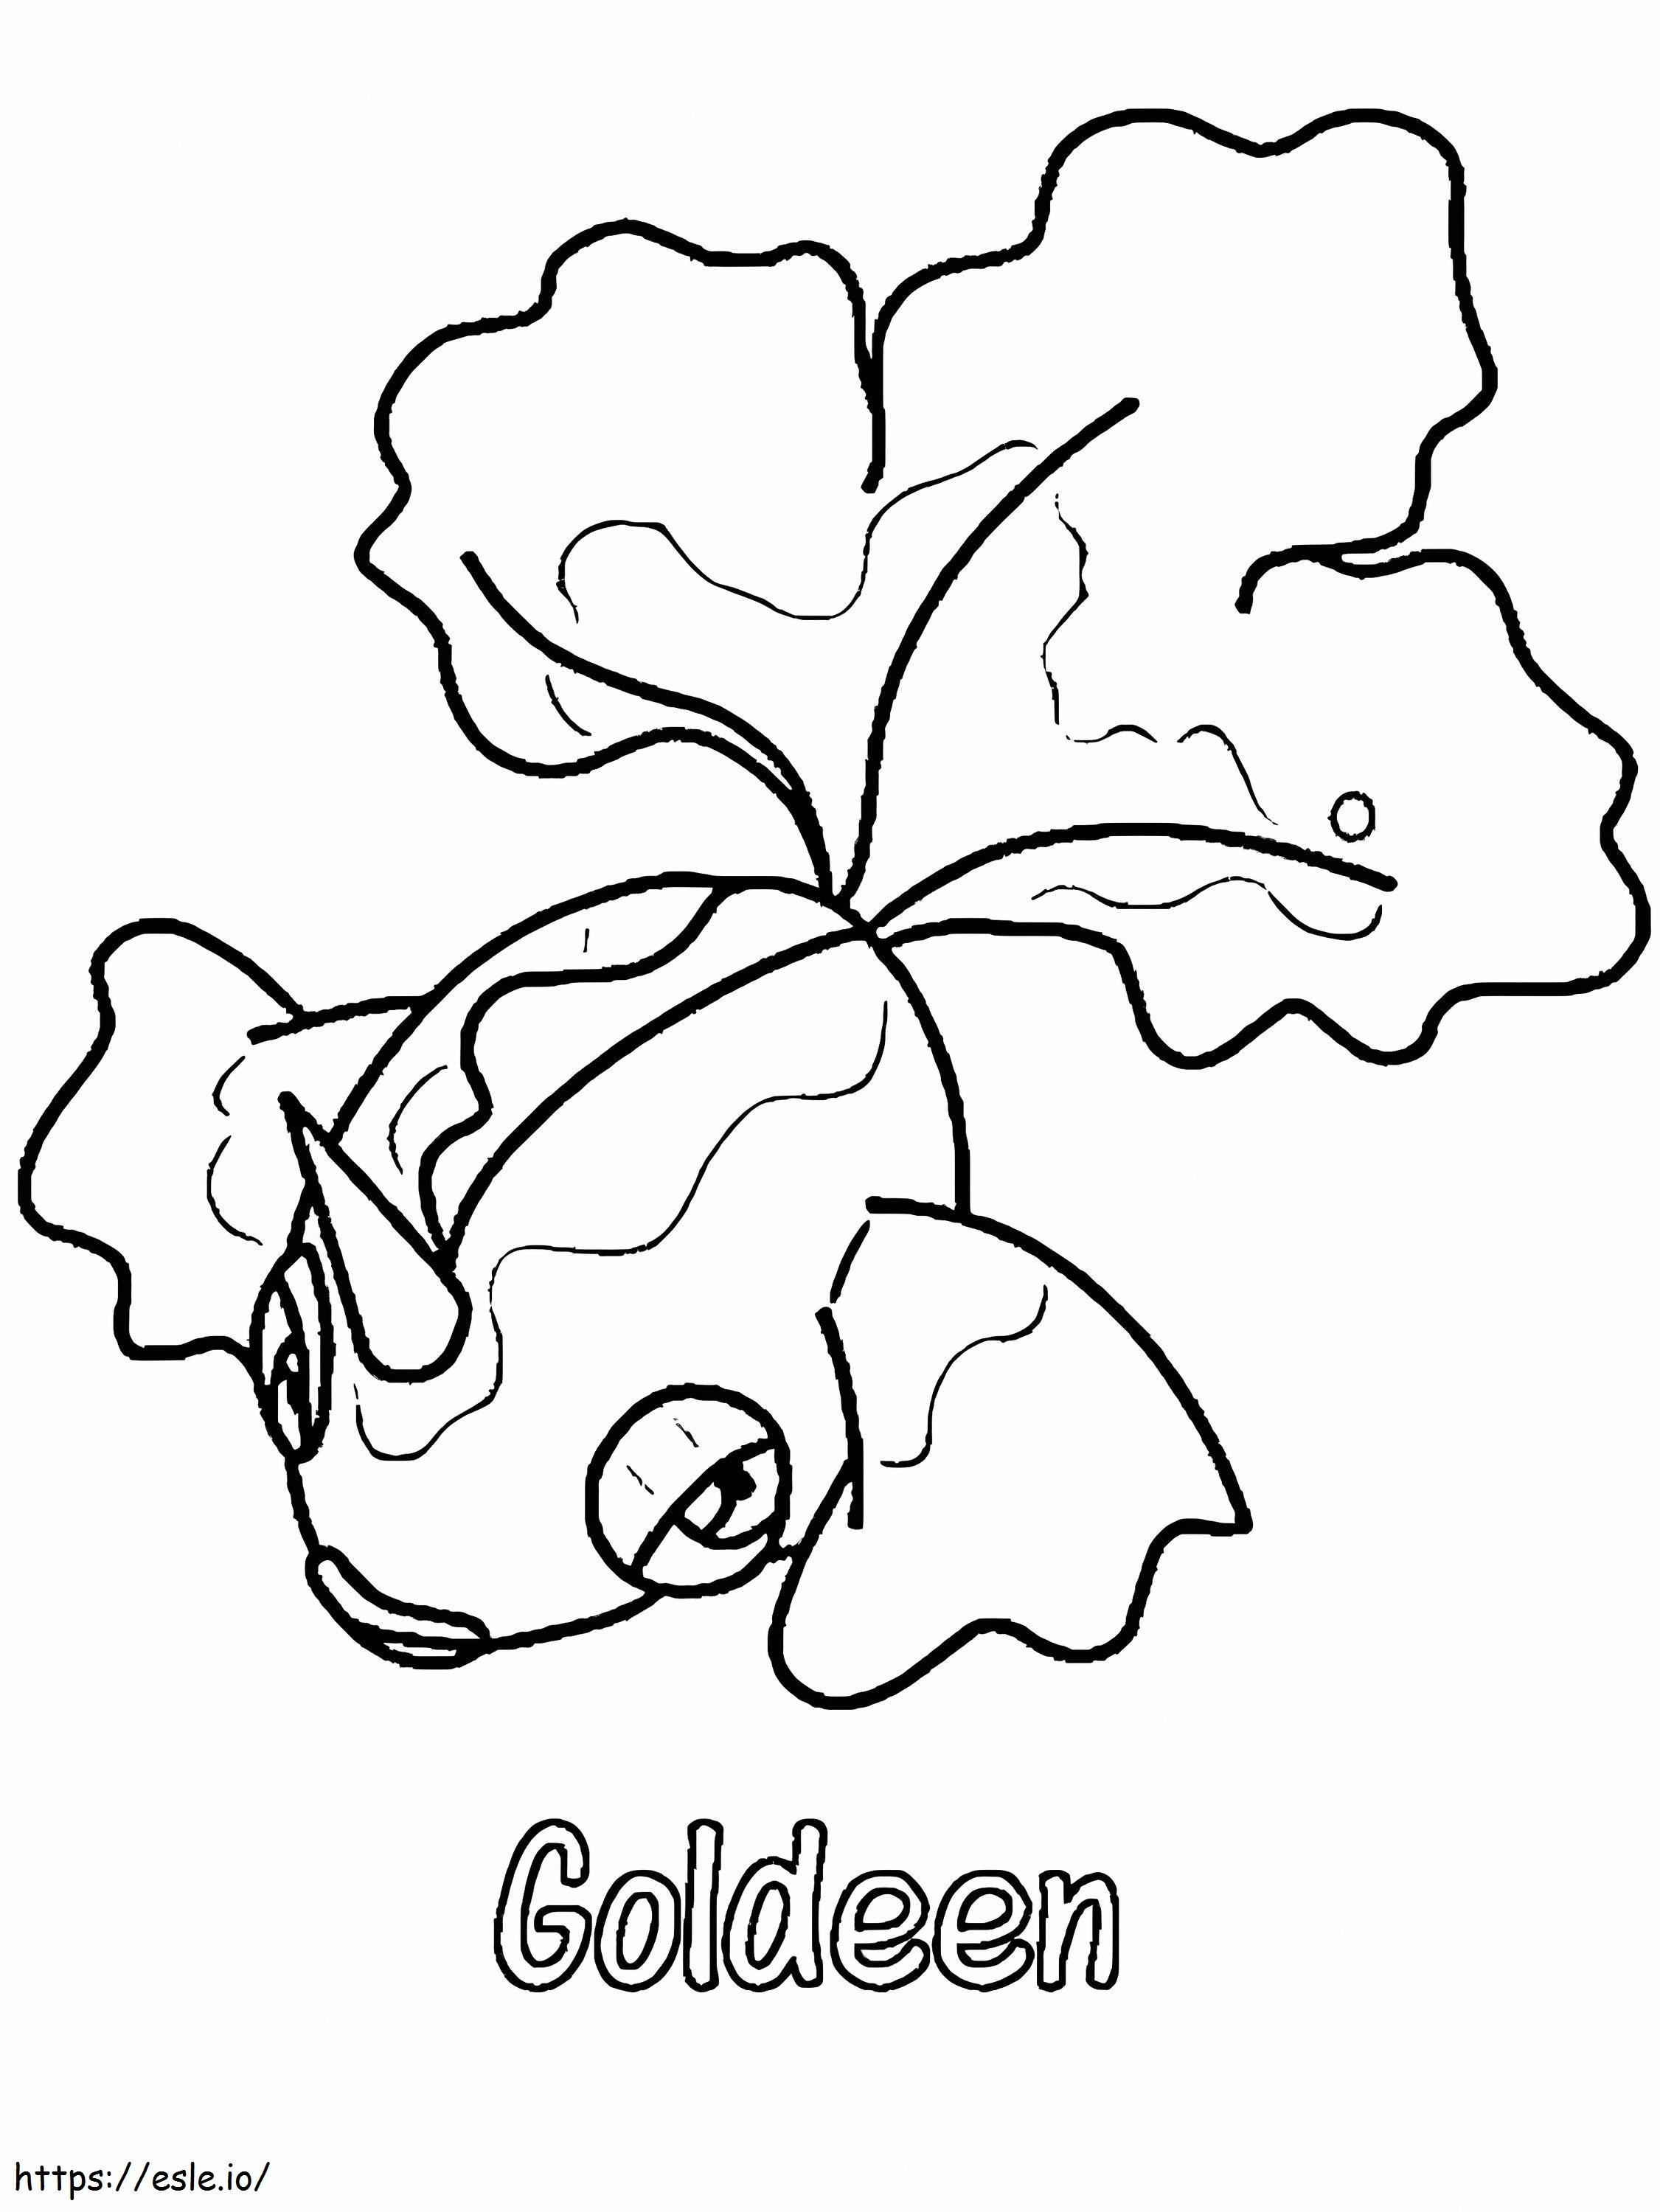 Gen 1 Pokemon Golden ausmalbilder